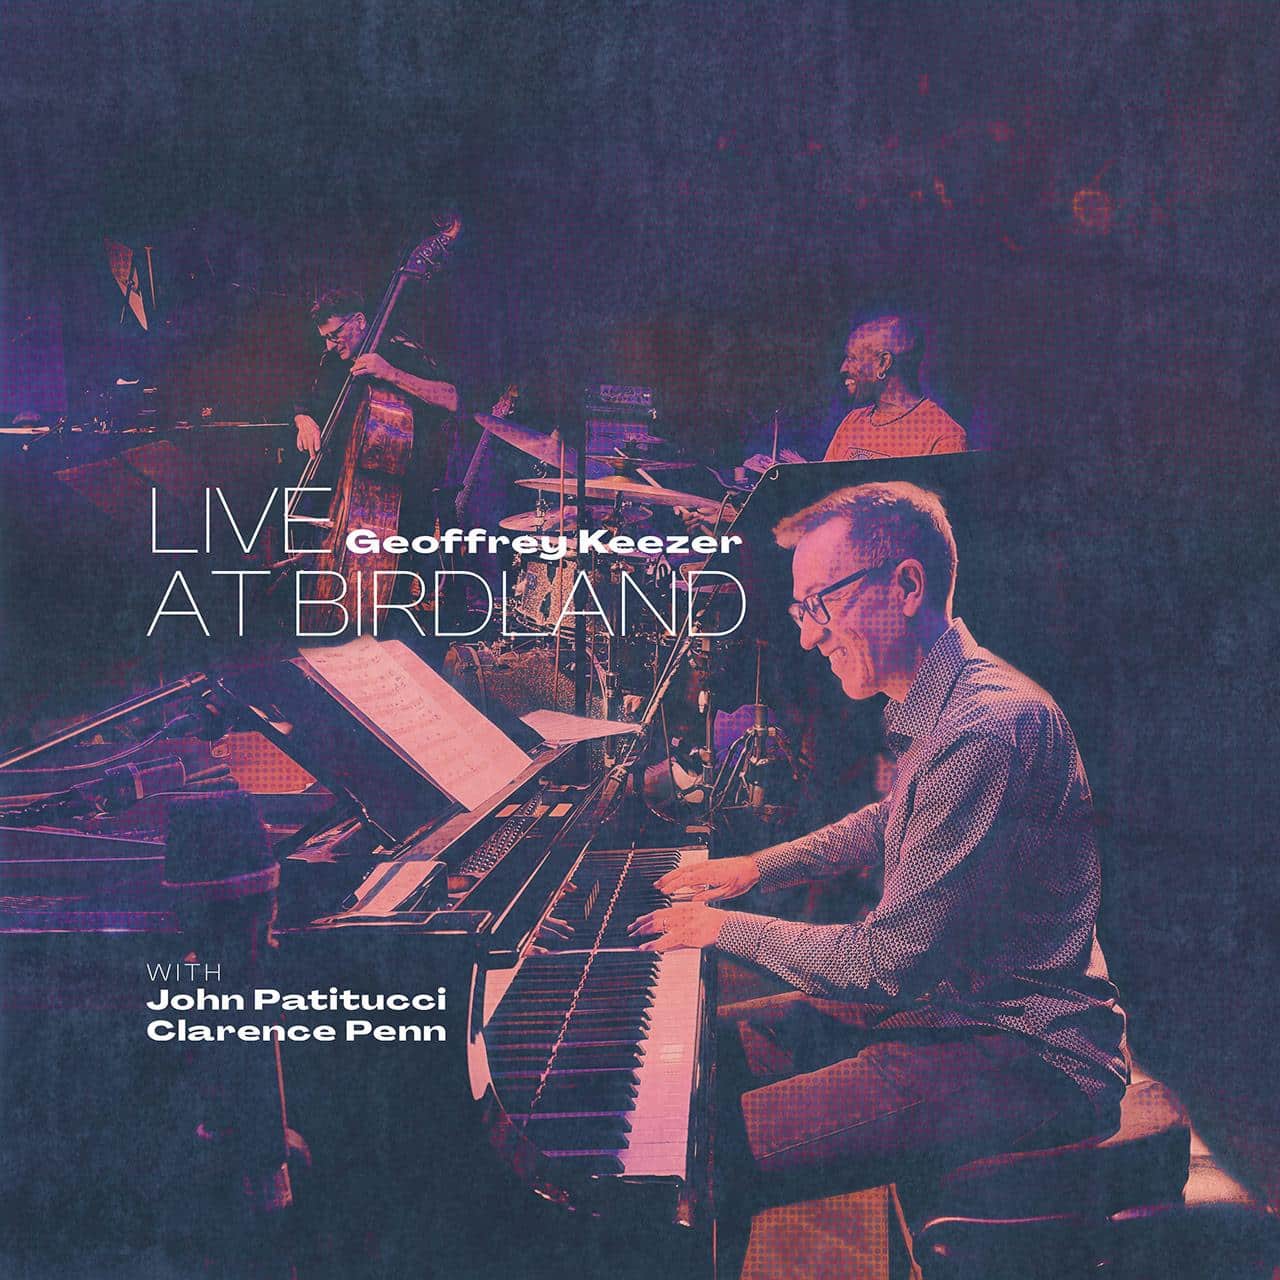 Geoffrey Keezer "Live at Birdland"